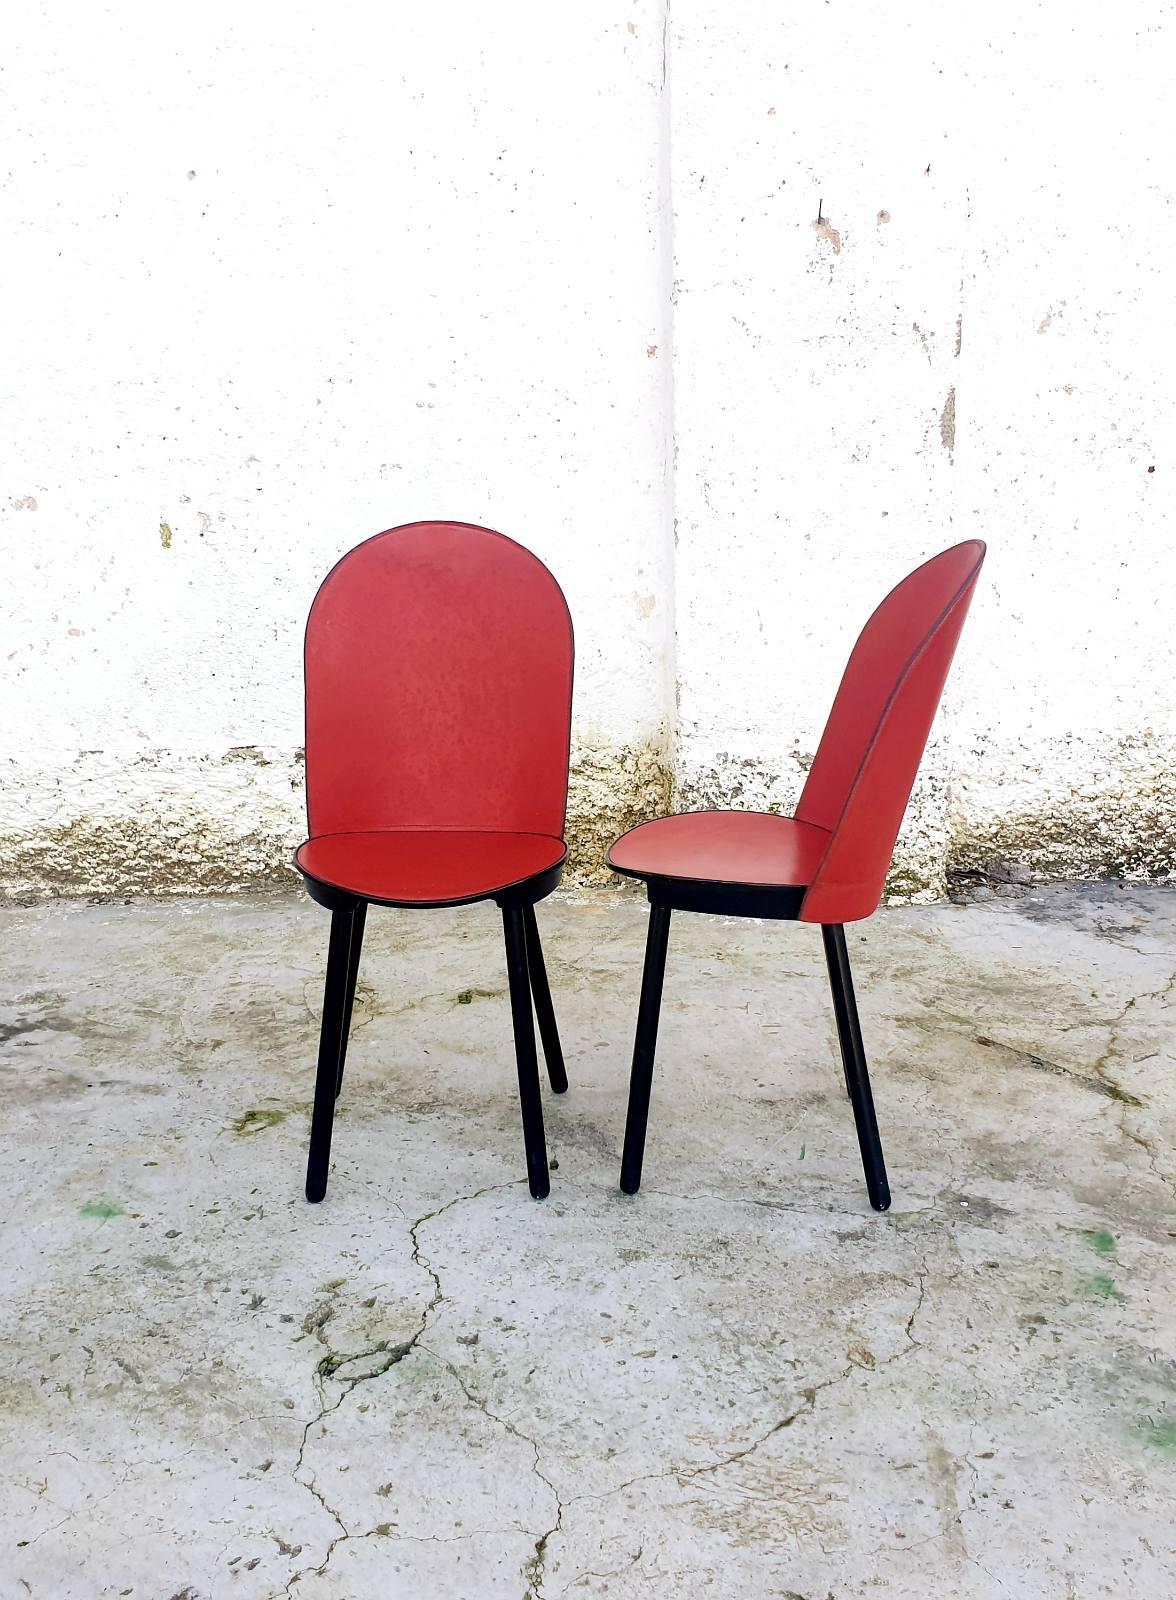 Les chaises de salle à manger vintage ont été conçues et produites par la marque italienne Zanotta dans les années 80.
Les chaises sont étiquetées. 